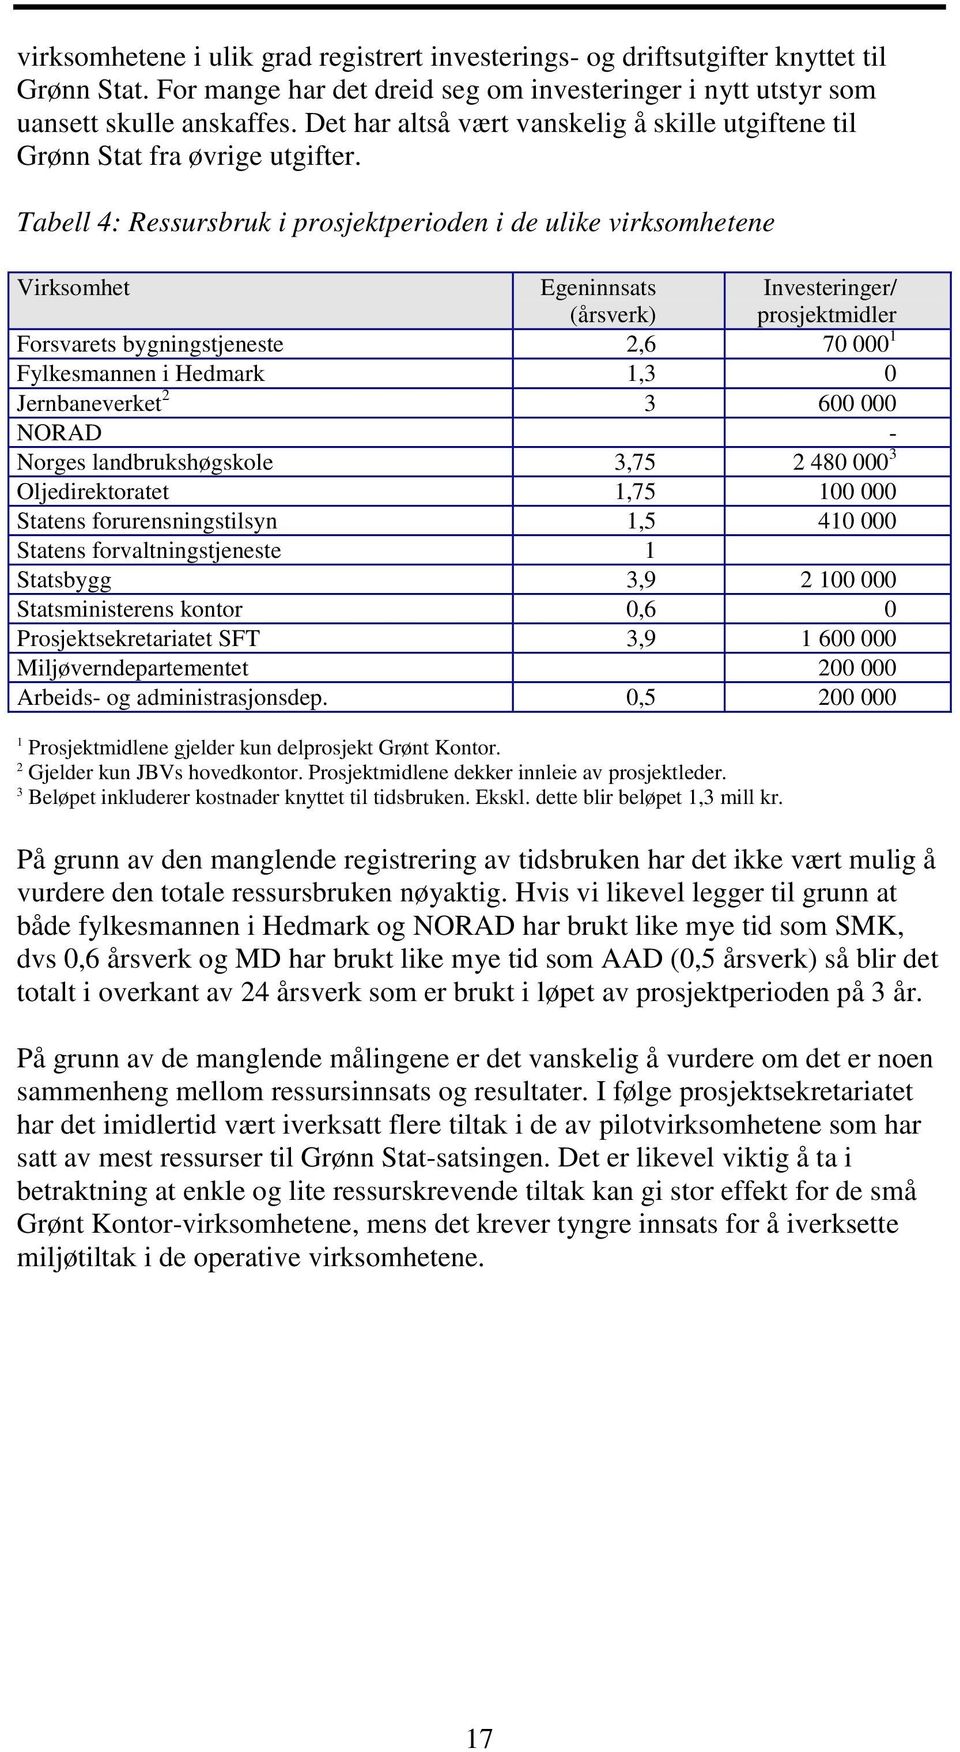 Tabell 4: Ressursbruk i prosjektperioden i de ulike virksomhetene Virksomhet Egeninnsats (årsverk) Investeringer/ prosjektmidler Forsvarets bygningstjeneste 2,6 70 000 1 Fylkesmannen i Hedmark 1,3 0